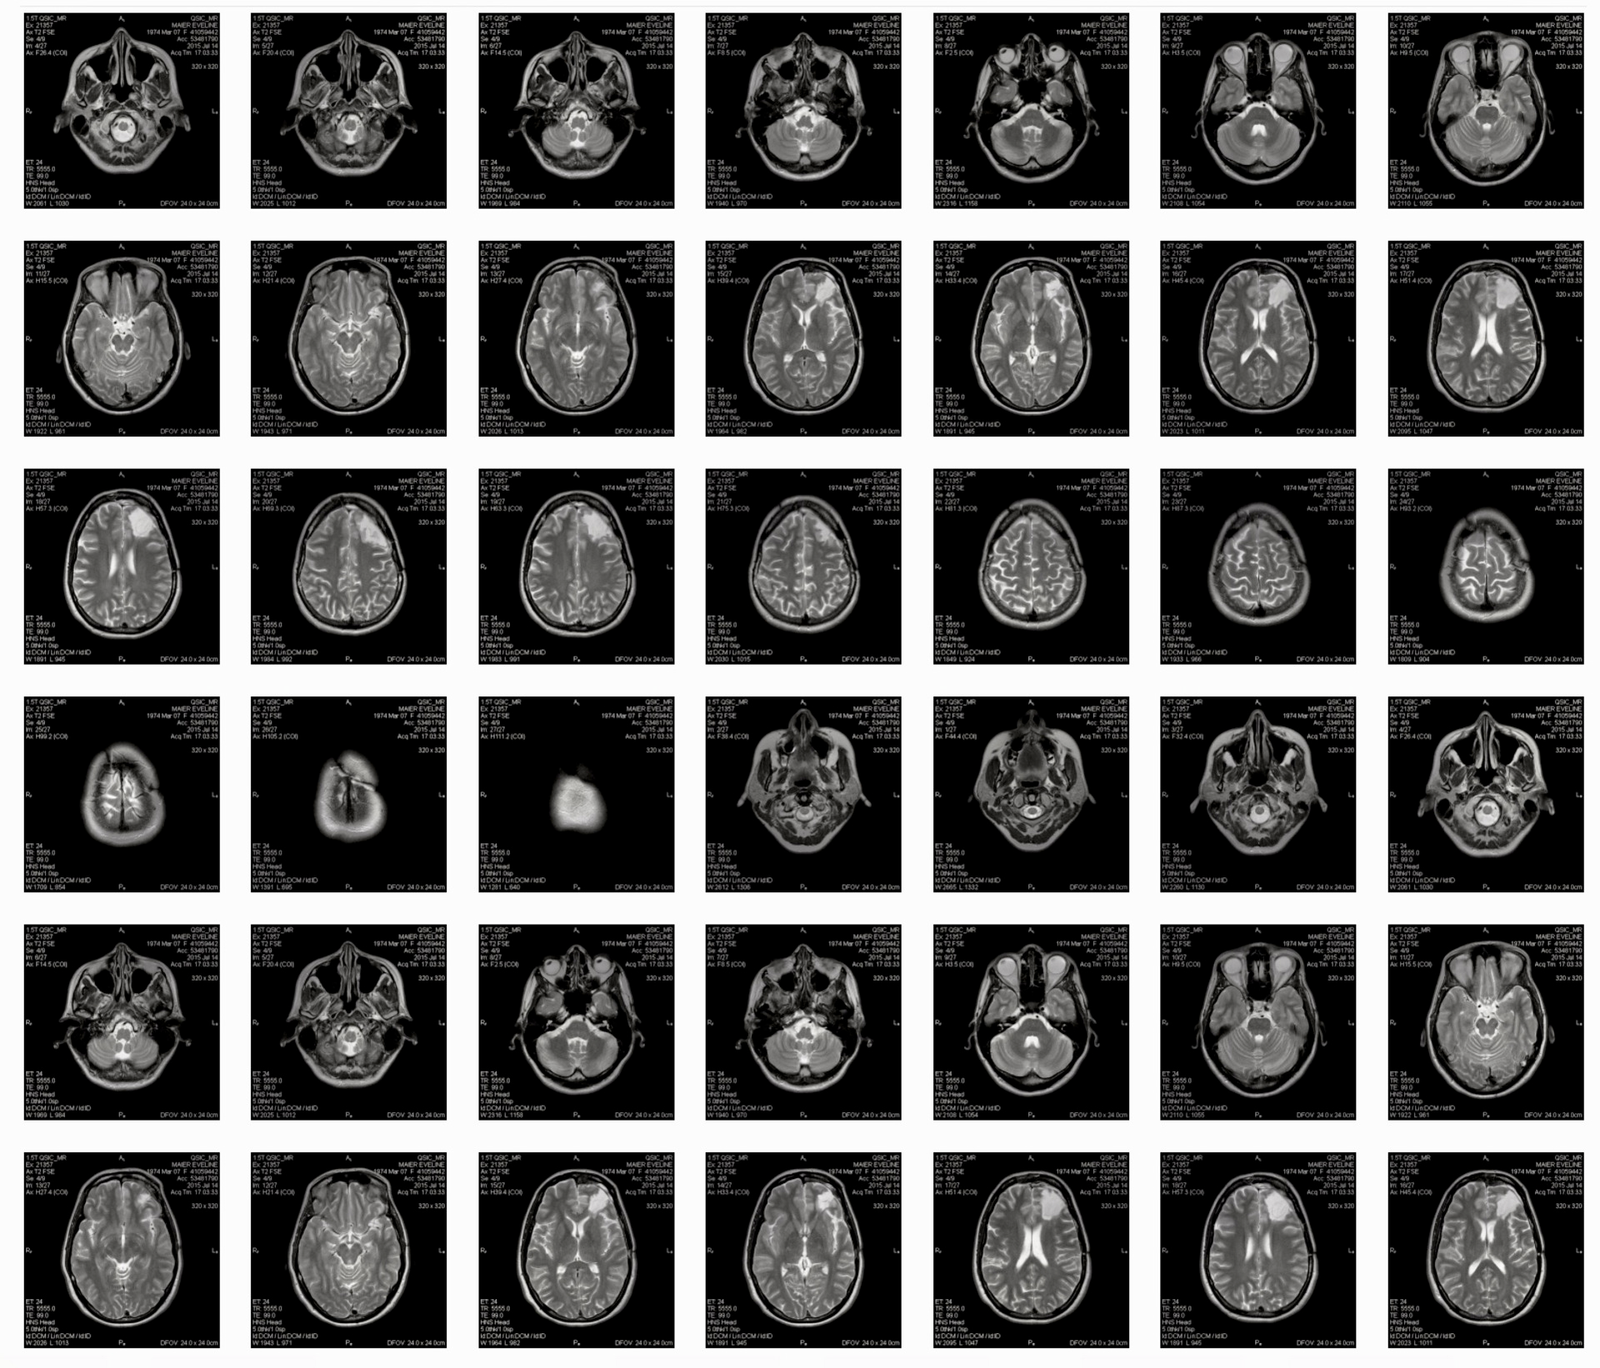 Evelin Maier's neurological MRI scans of 2014/2015. 